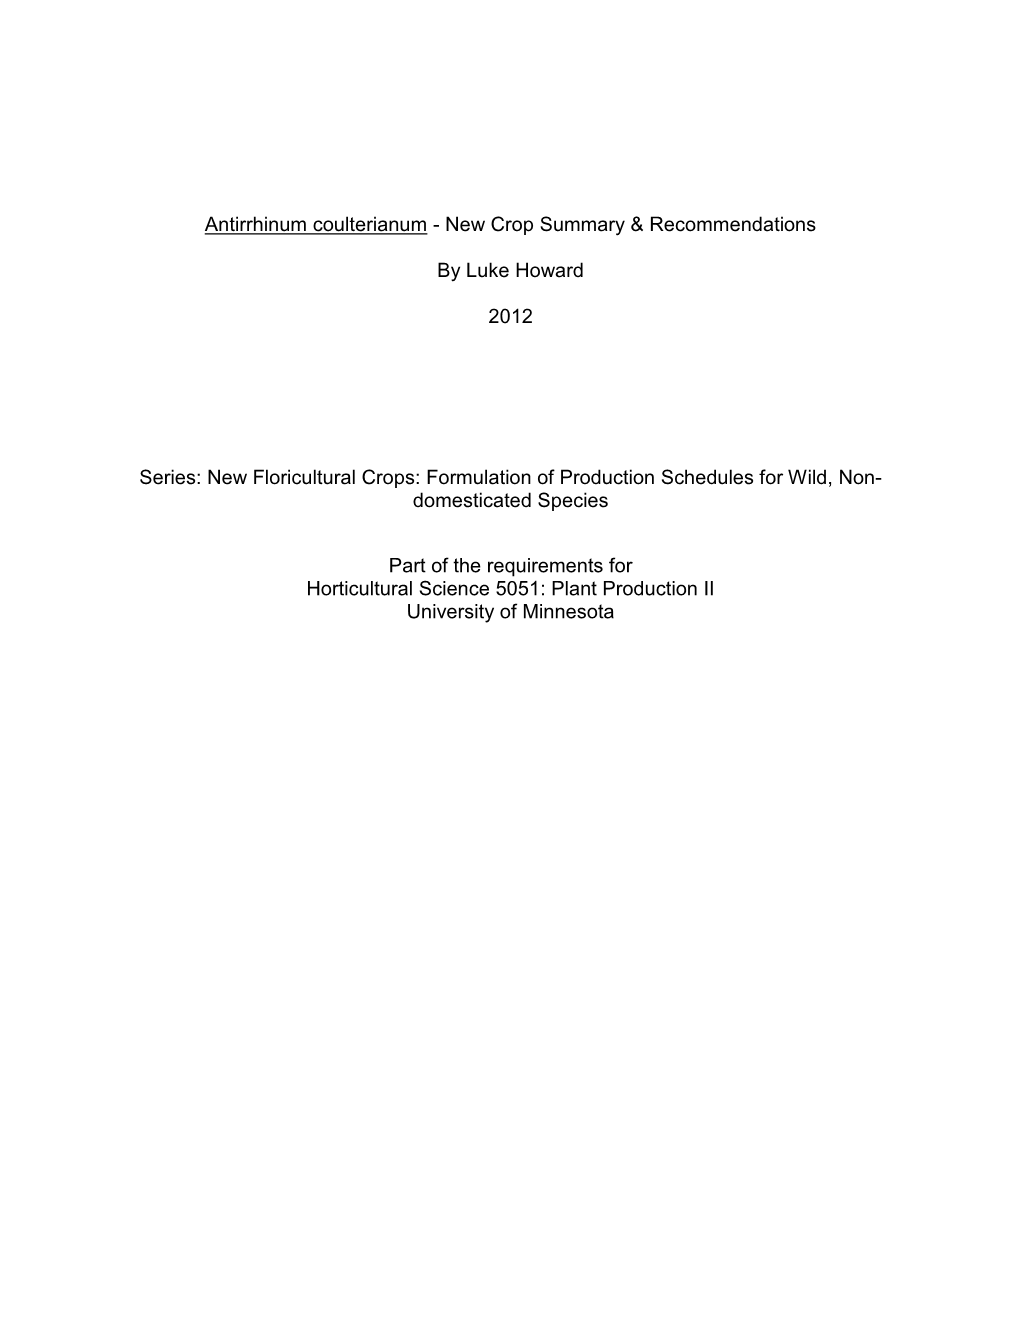 New Crop Research: Antirrhinum Coulterianum